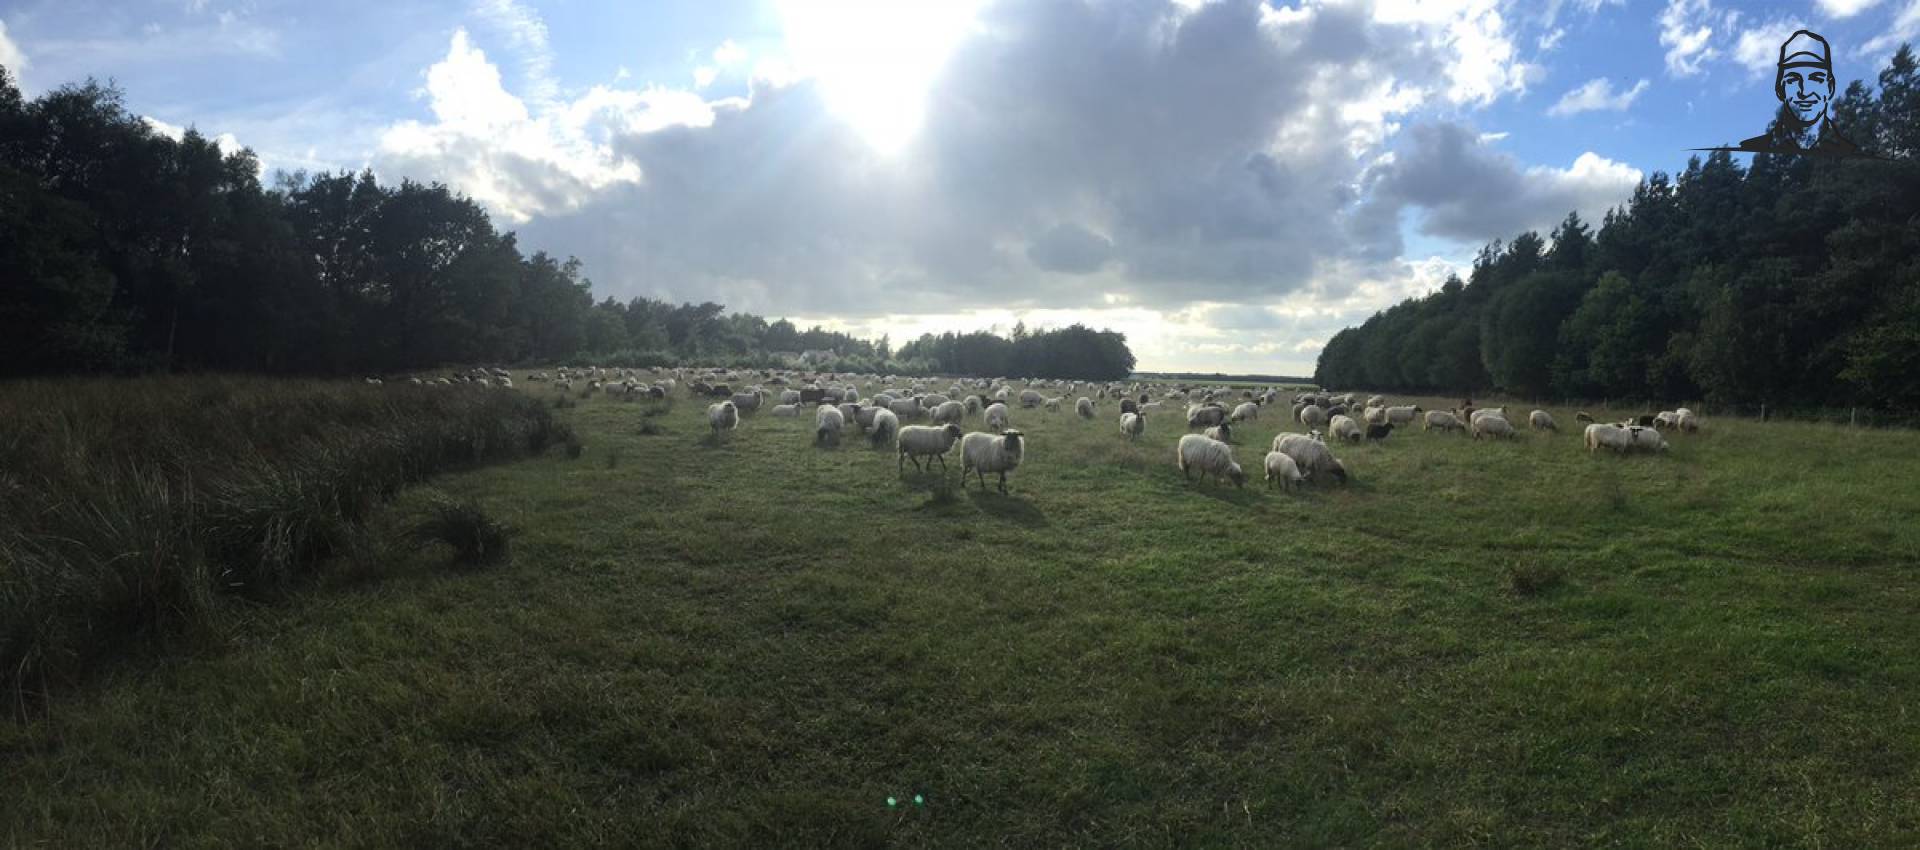 De schapen van het Hijkerveld bijeen van Nieuwsgrazer